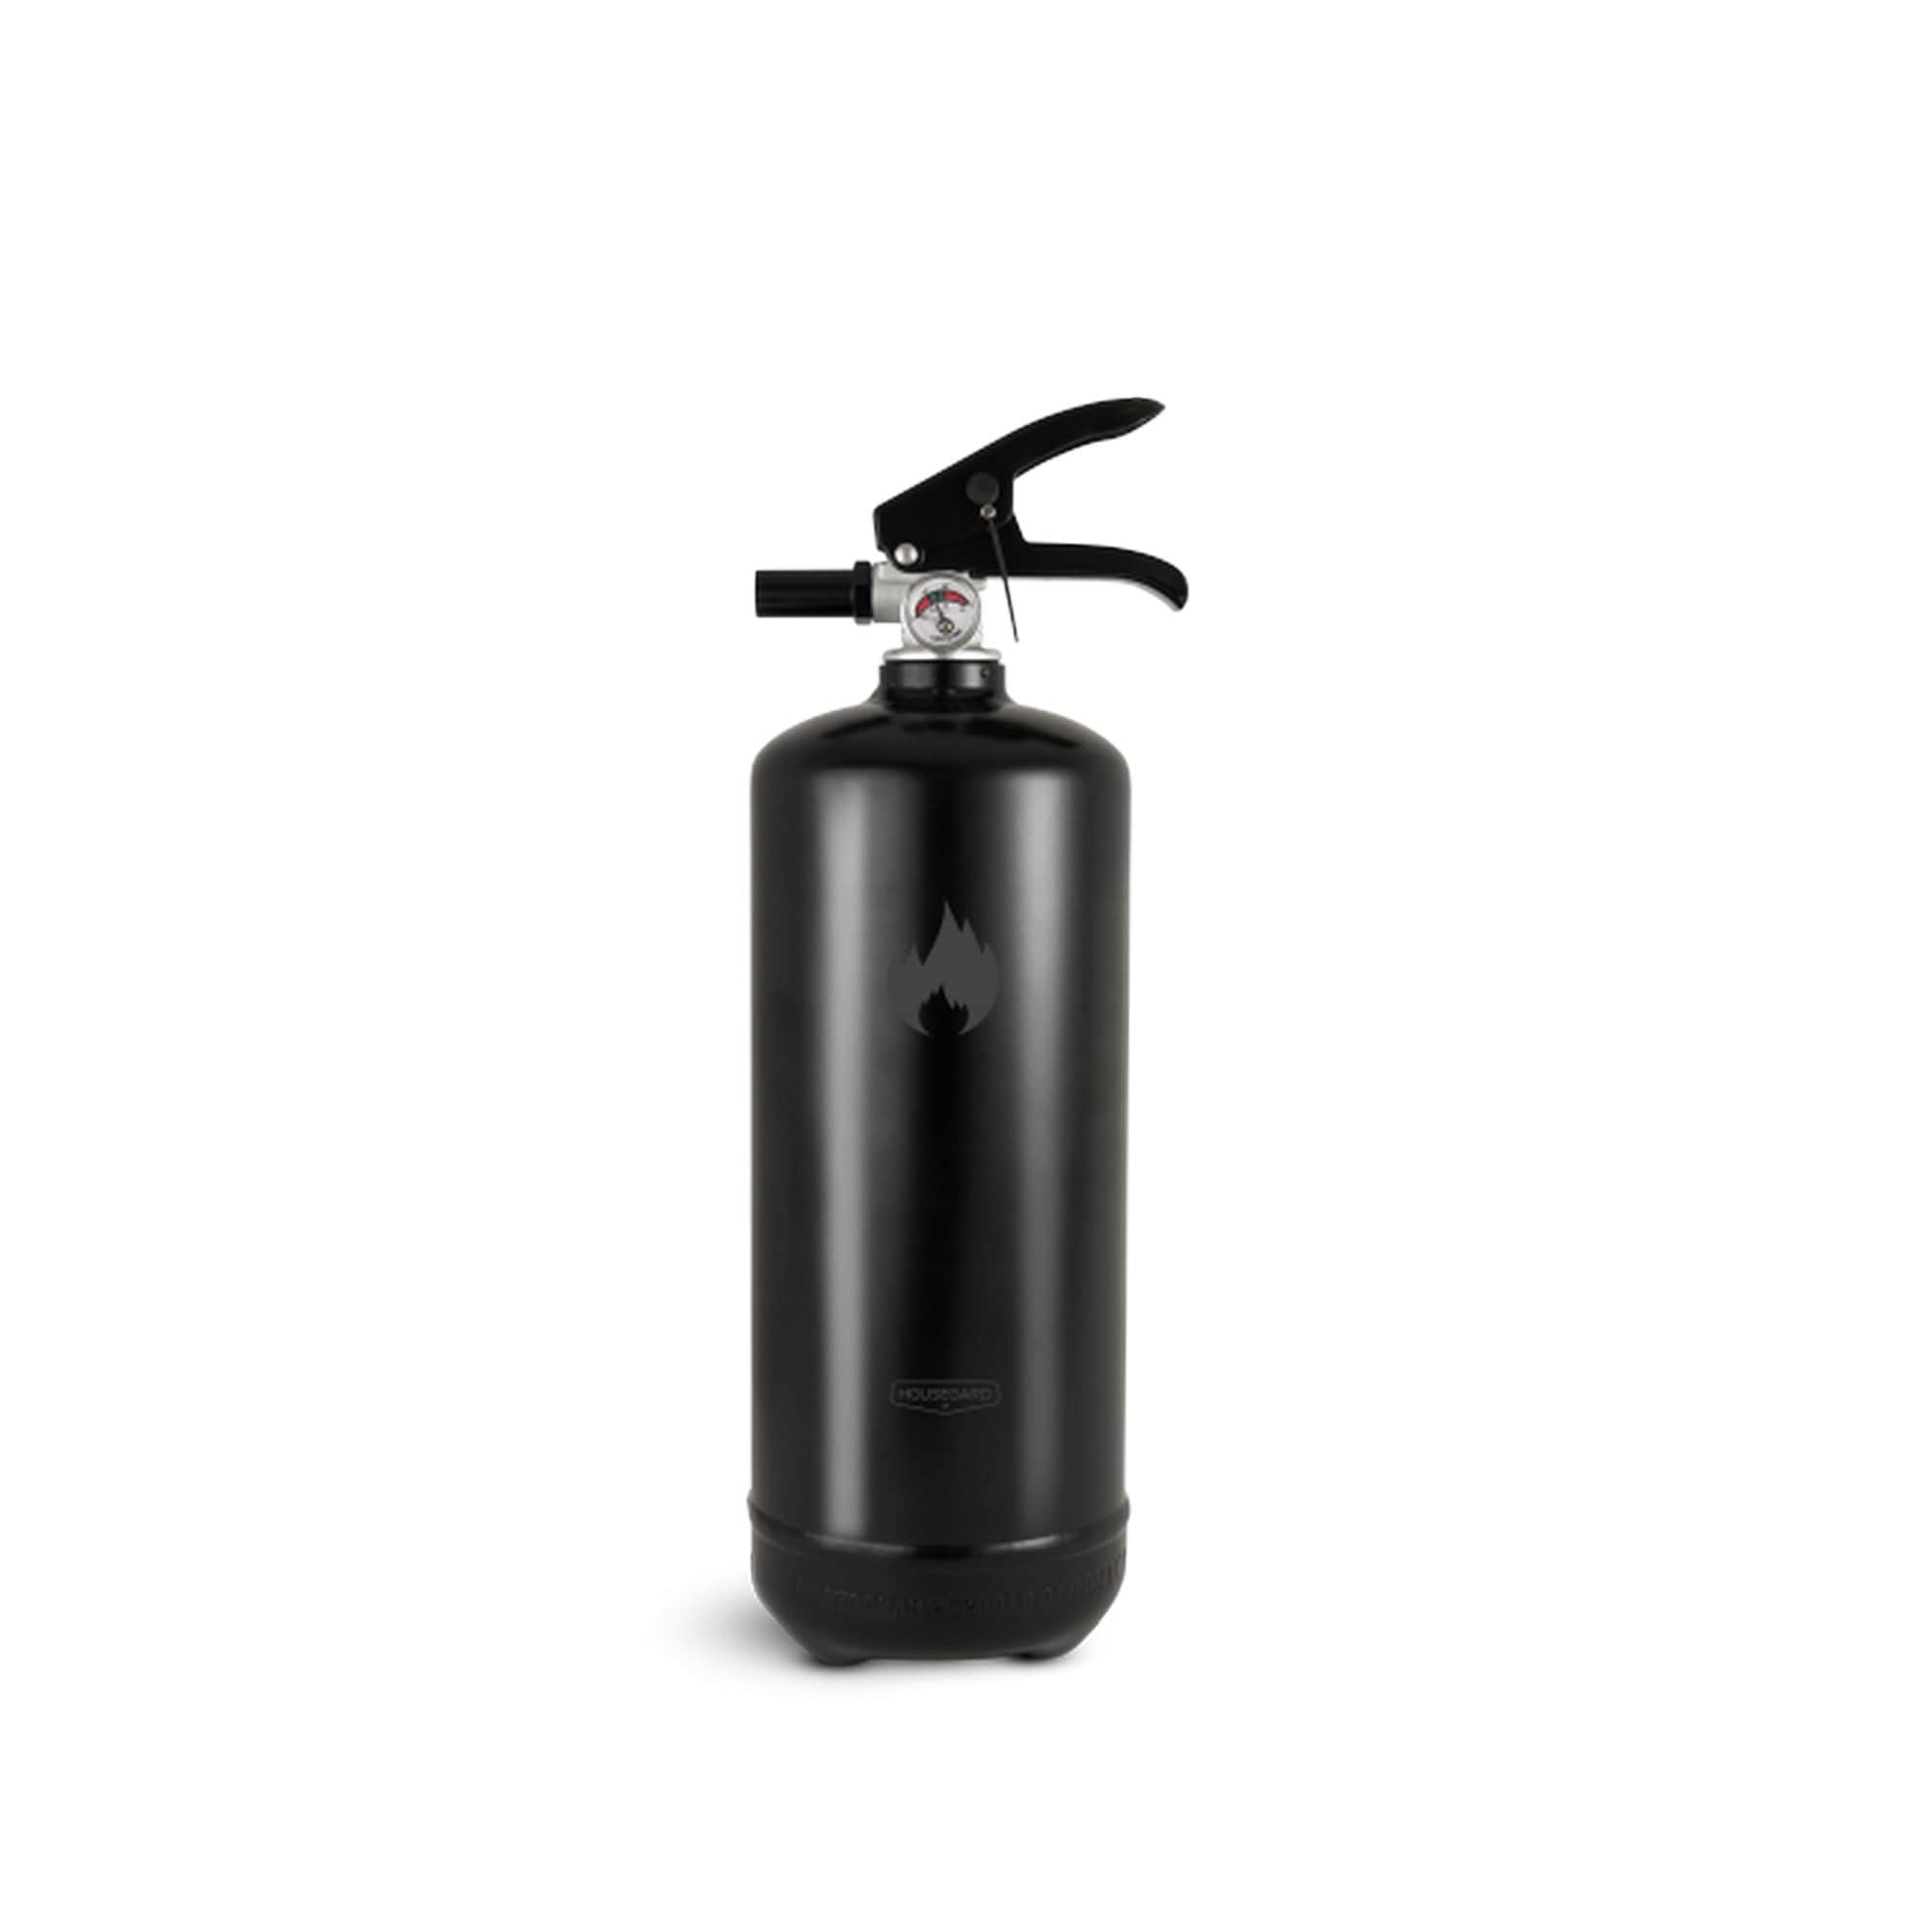 Brandsläckare,Design by Housegard, 2 kg pulver svart